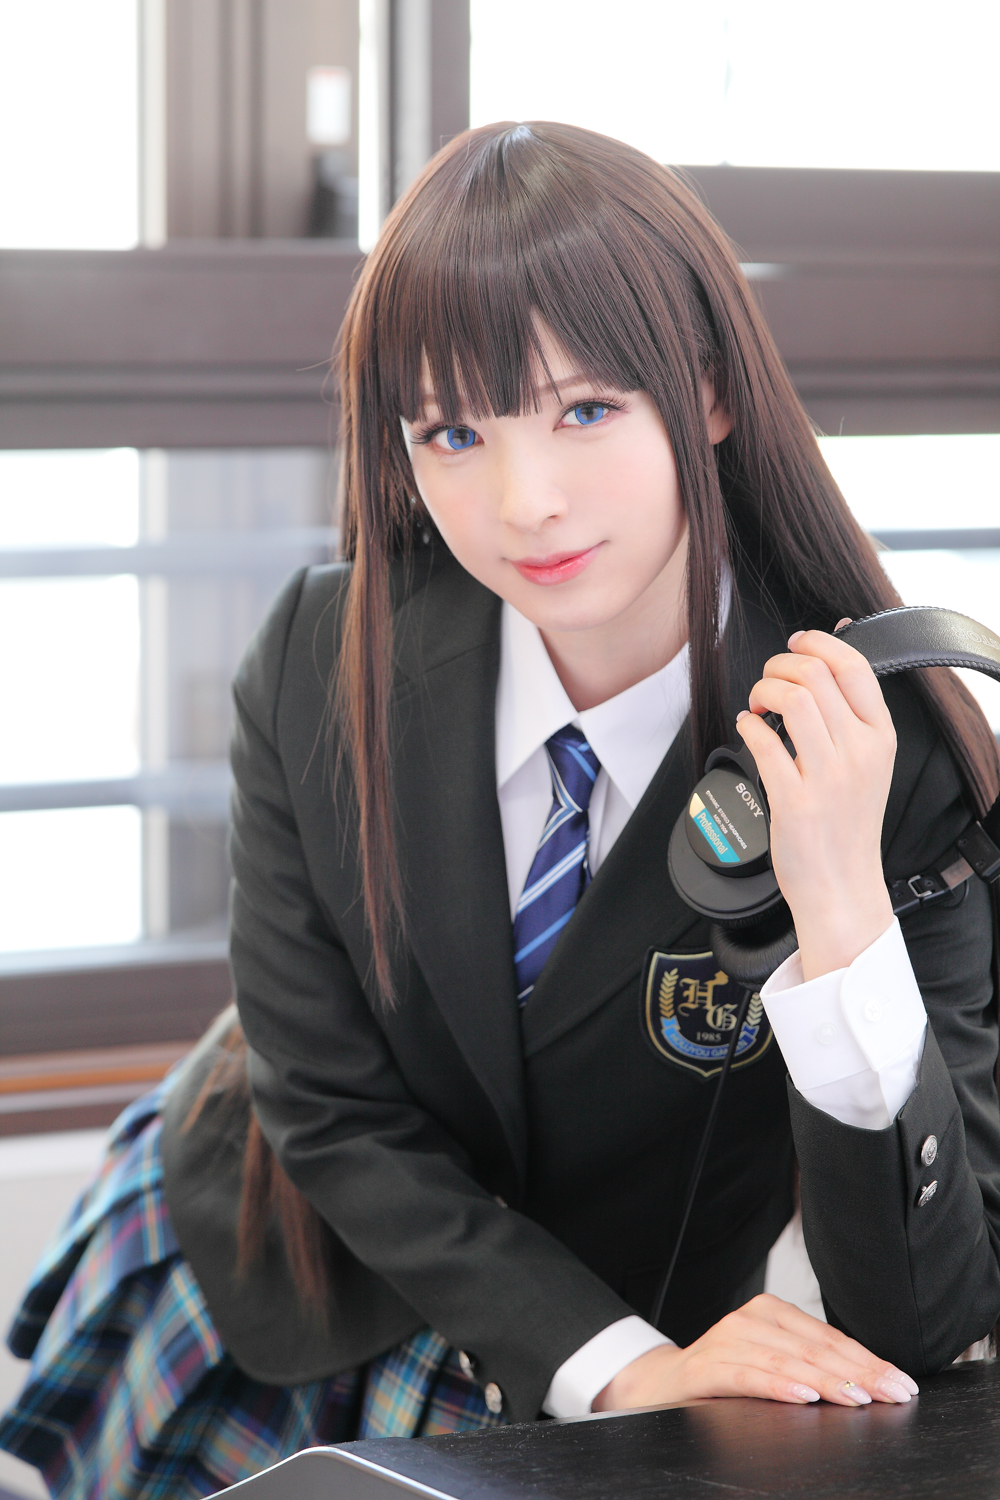 People 1000x1500 cosplay Asian women indoors school uniform headphones women